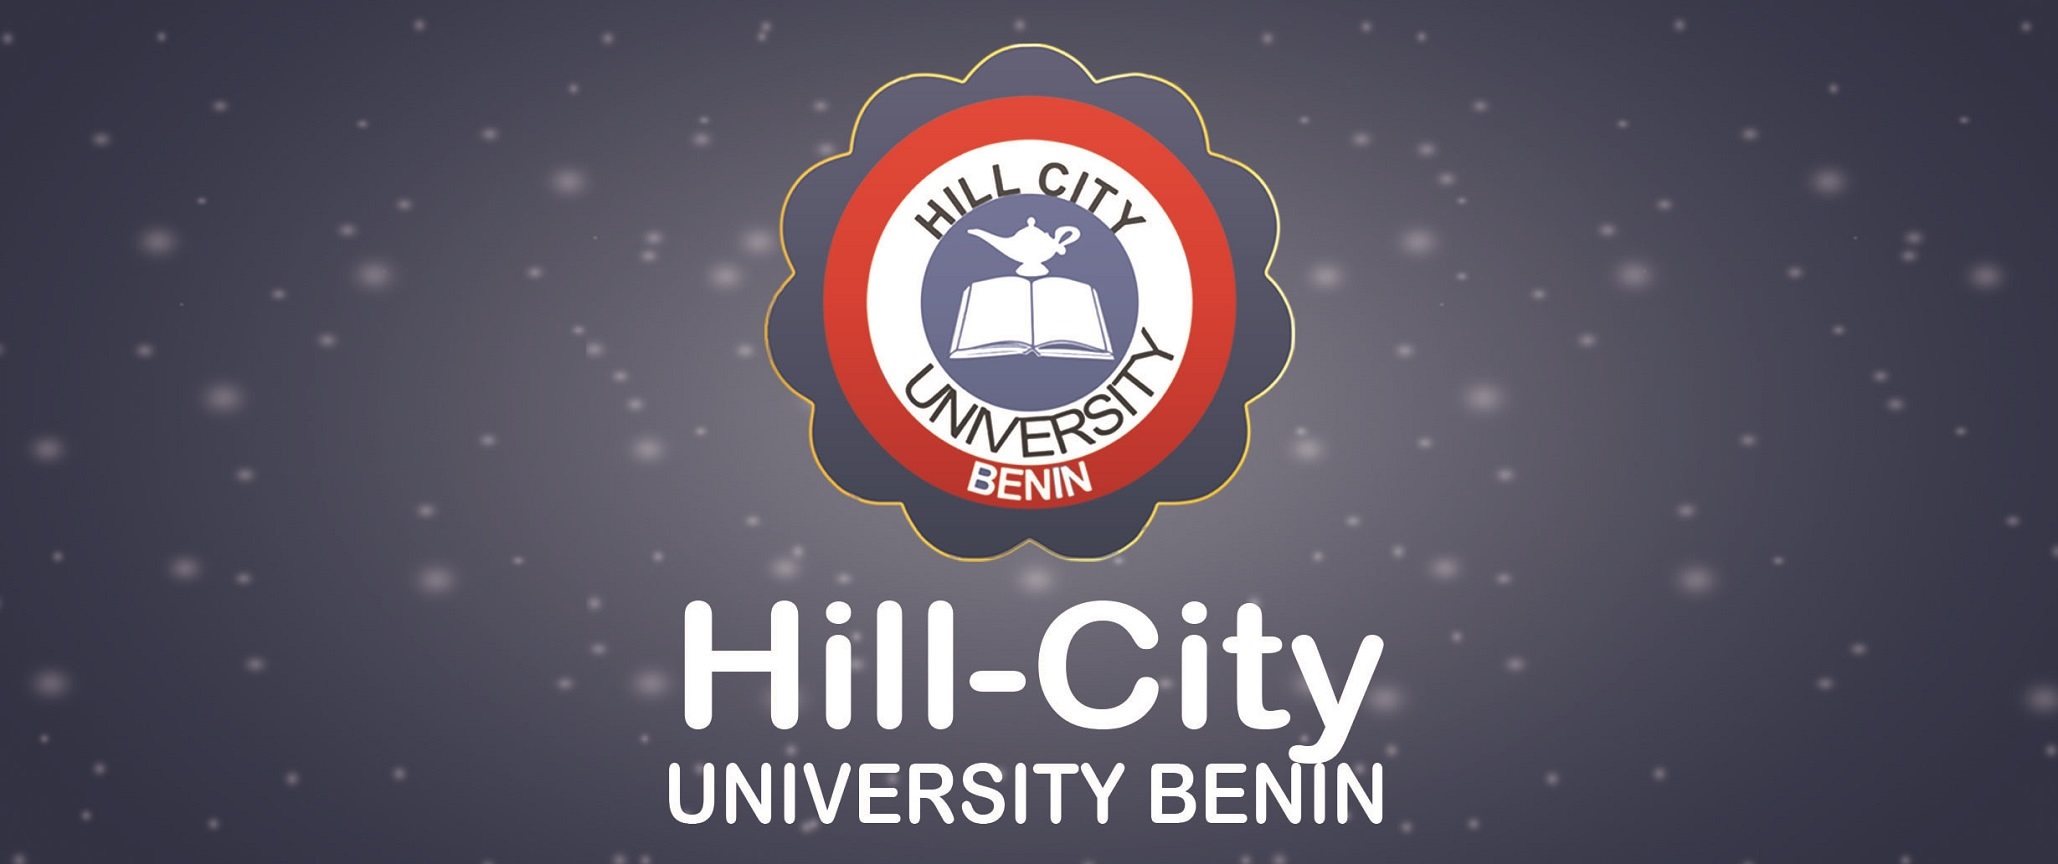 Холм сити. Файл Хиллс. Хилл Сити спорт. University Nagoya City logo. Зе Сити Юниверсити оф Нью Ерл.